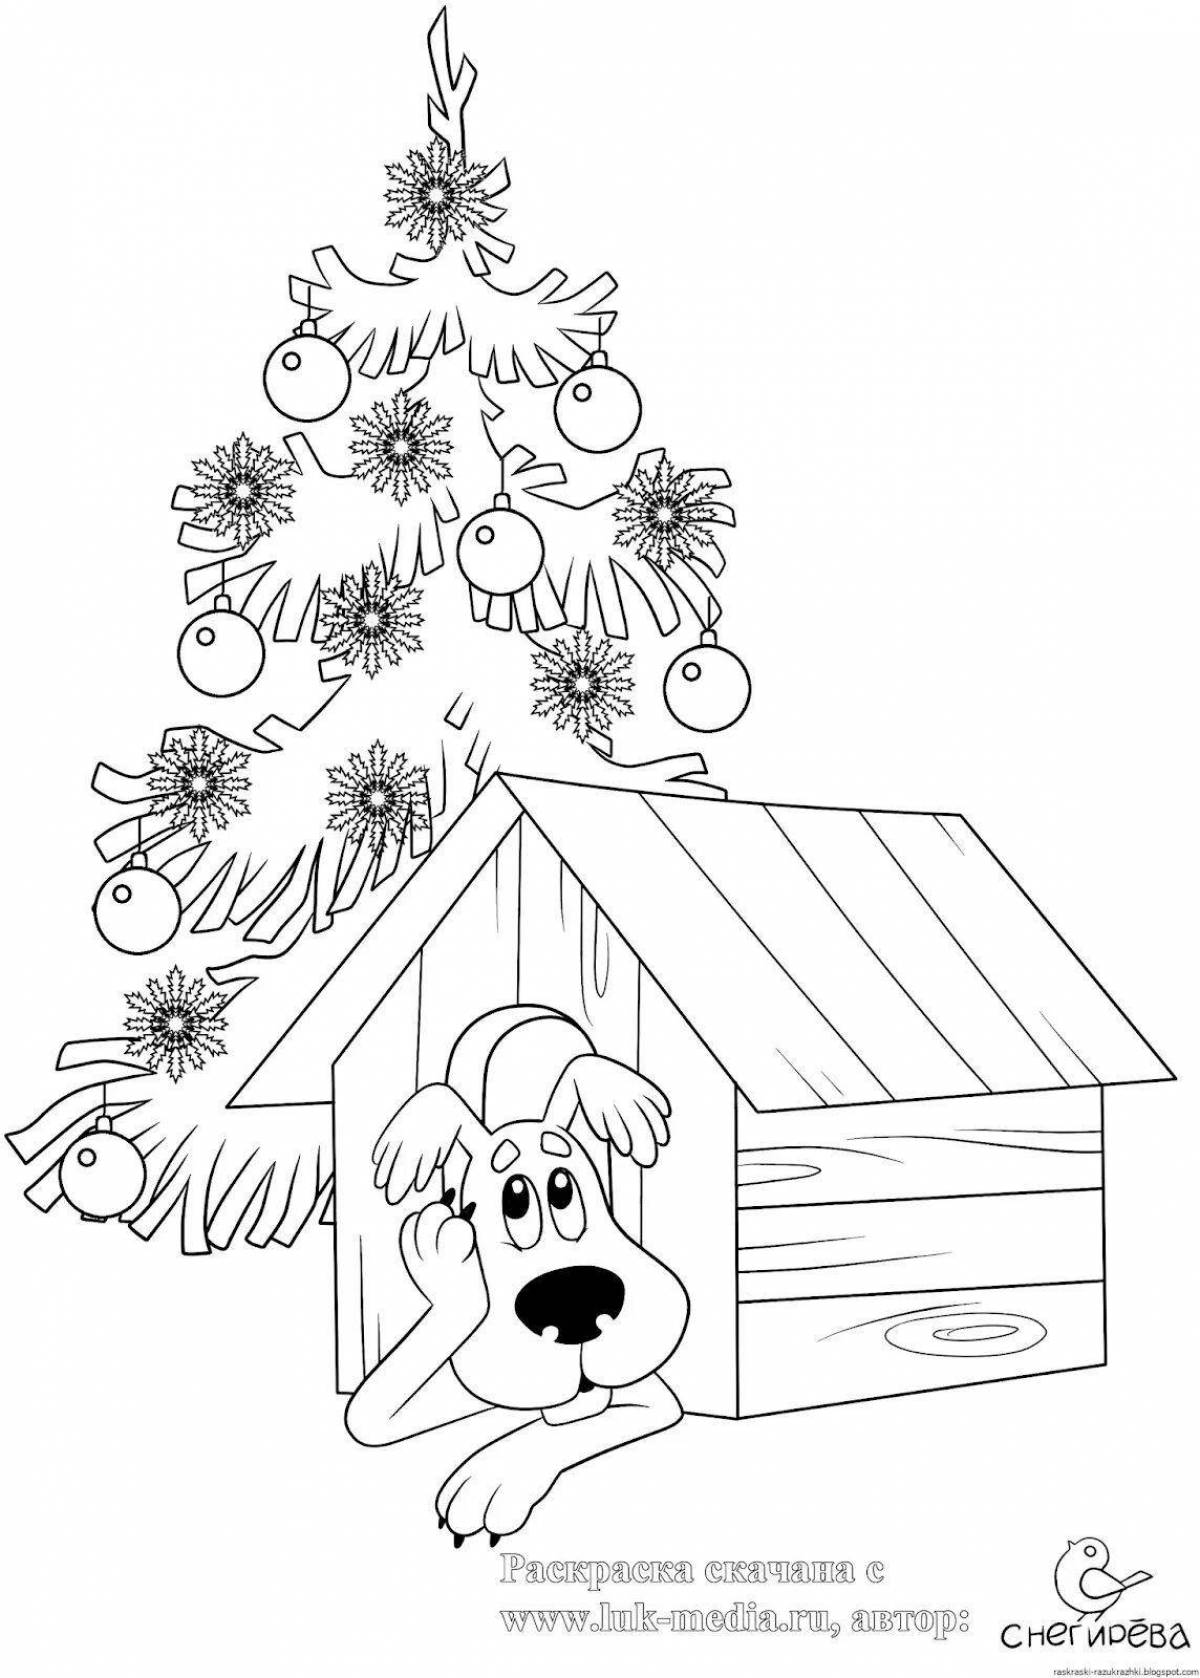 Праздничная рождественская раскраска собаки